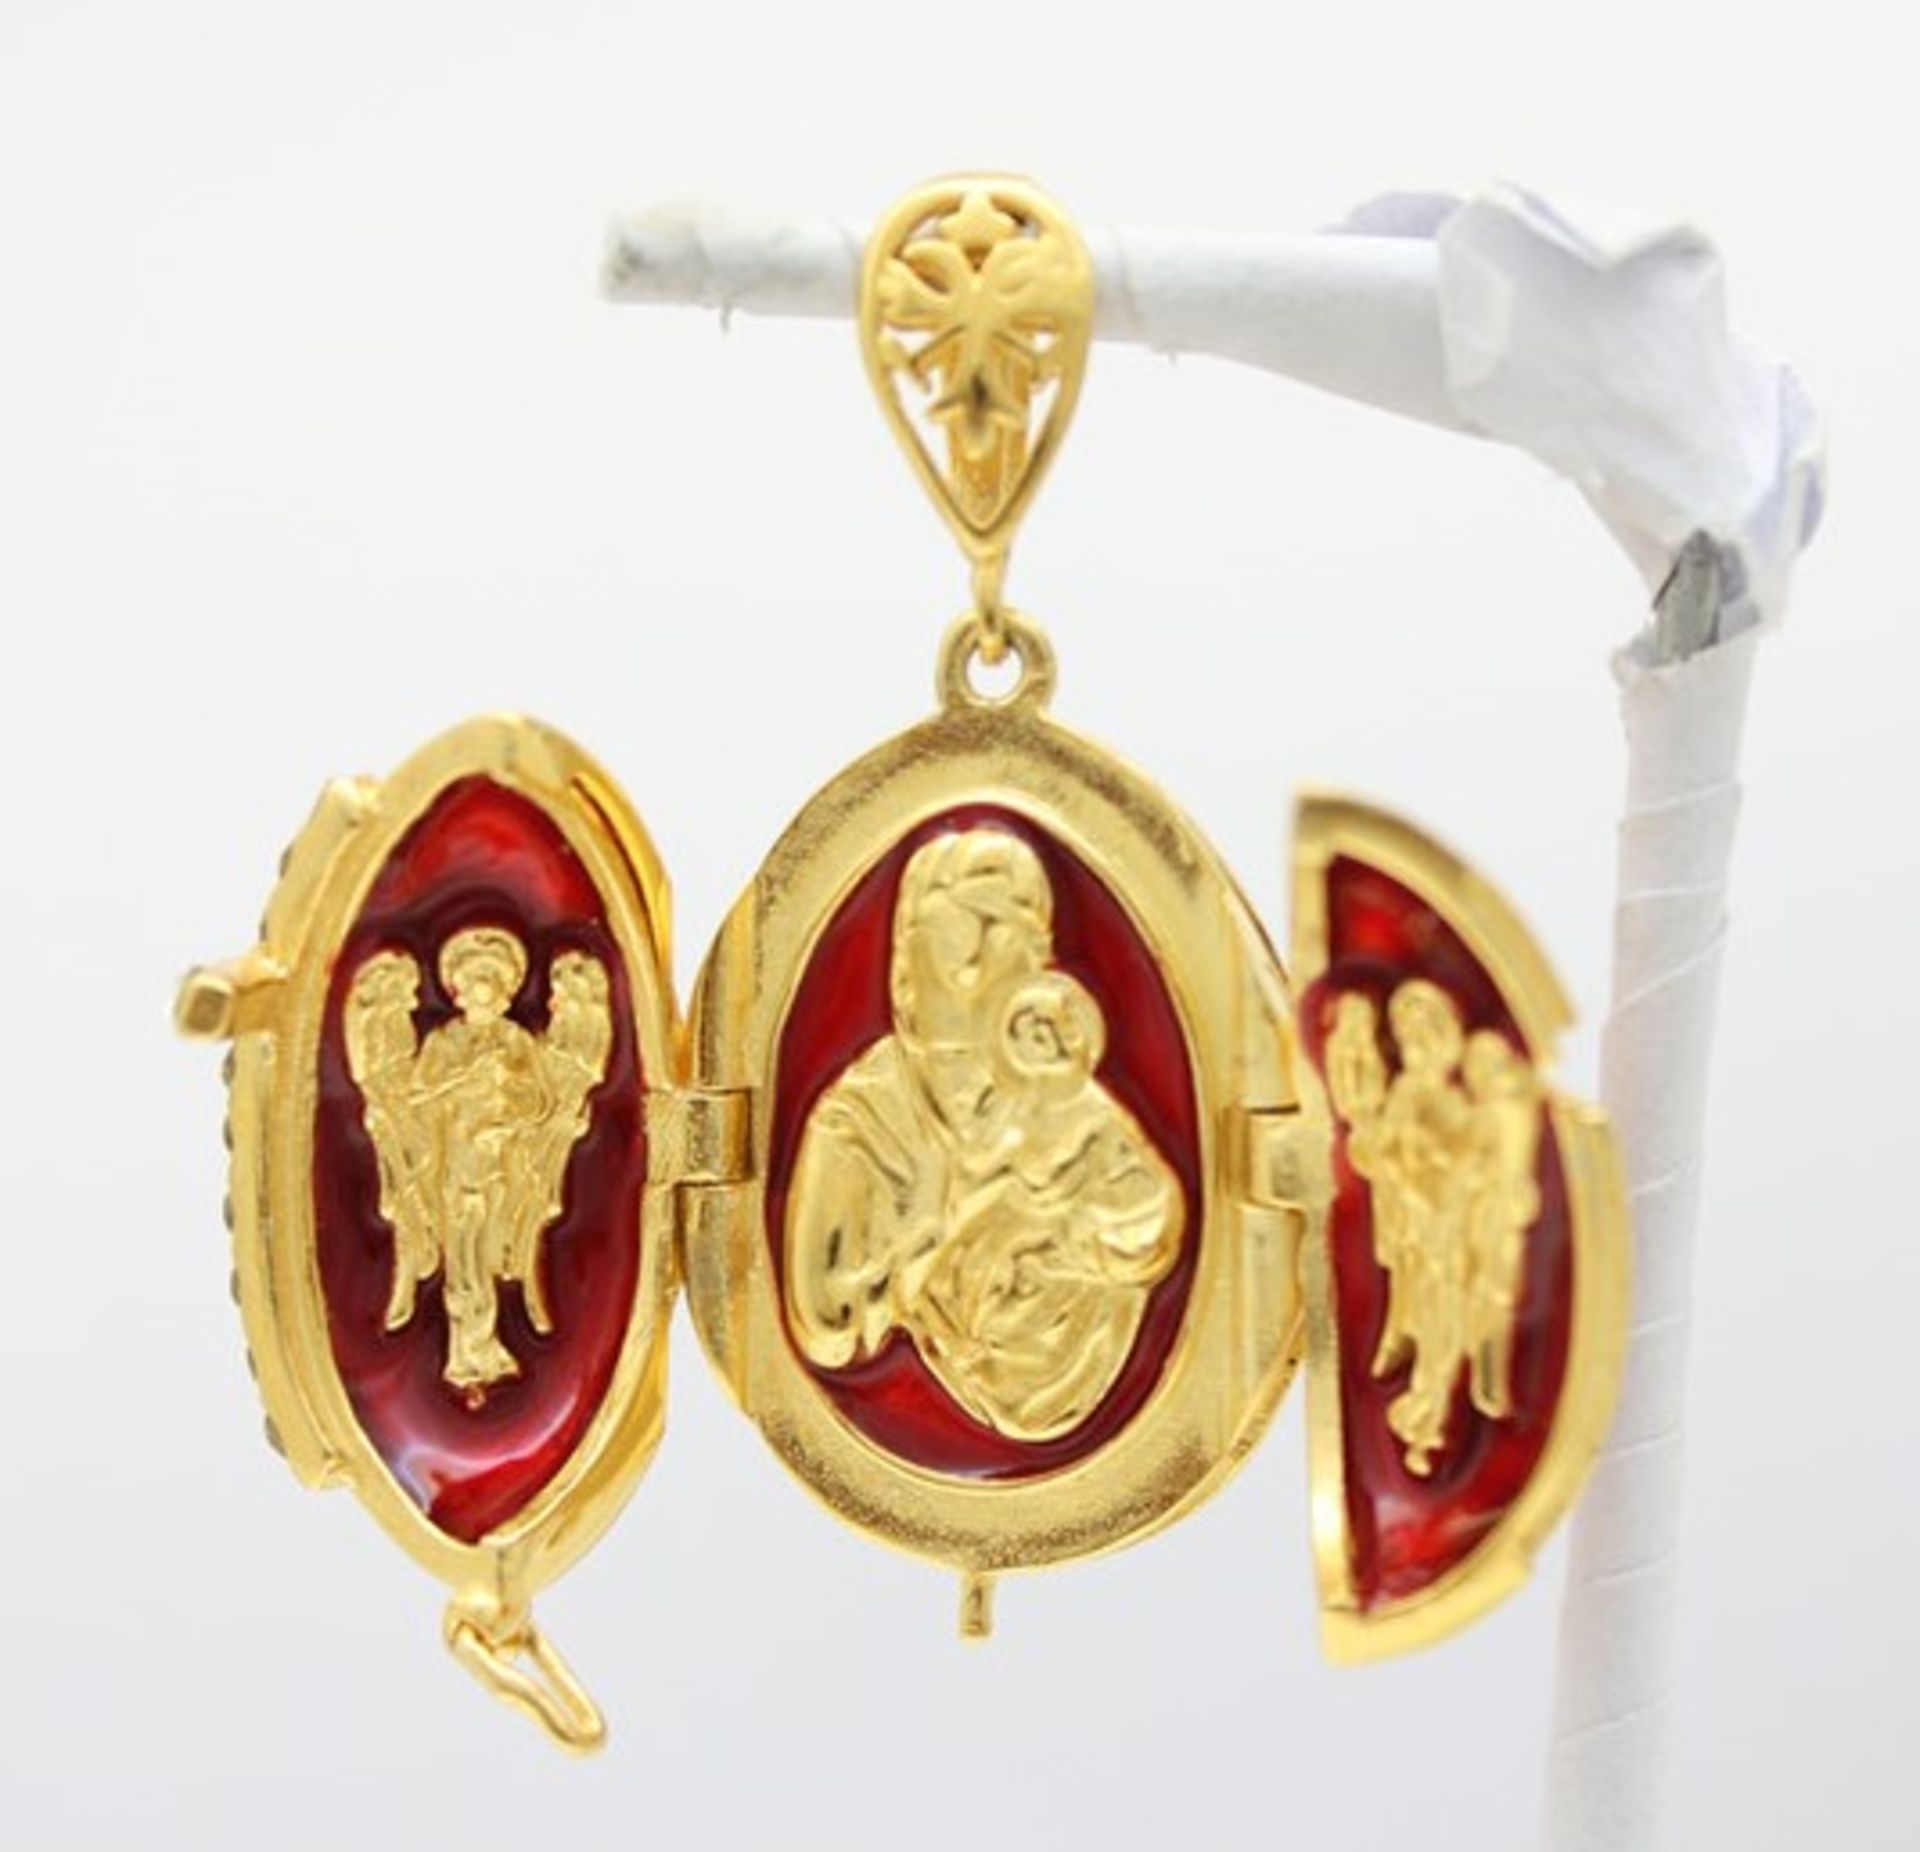 Rotes Ei mit Kreuz. Kettenanhänger in russischem Faberge-Stil. 925 Sterling Silber, farbig